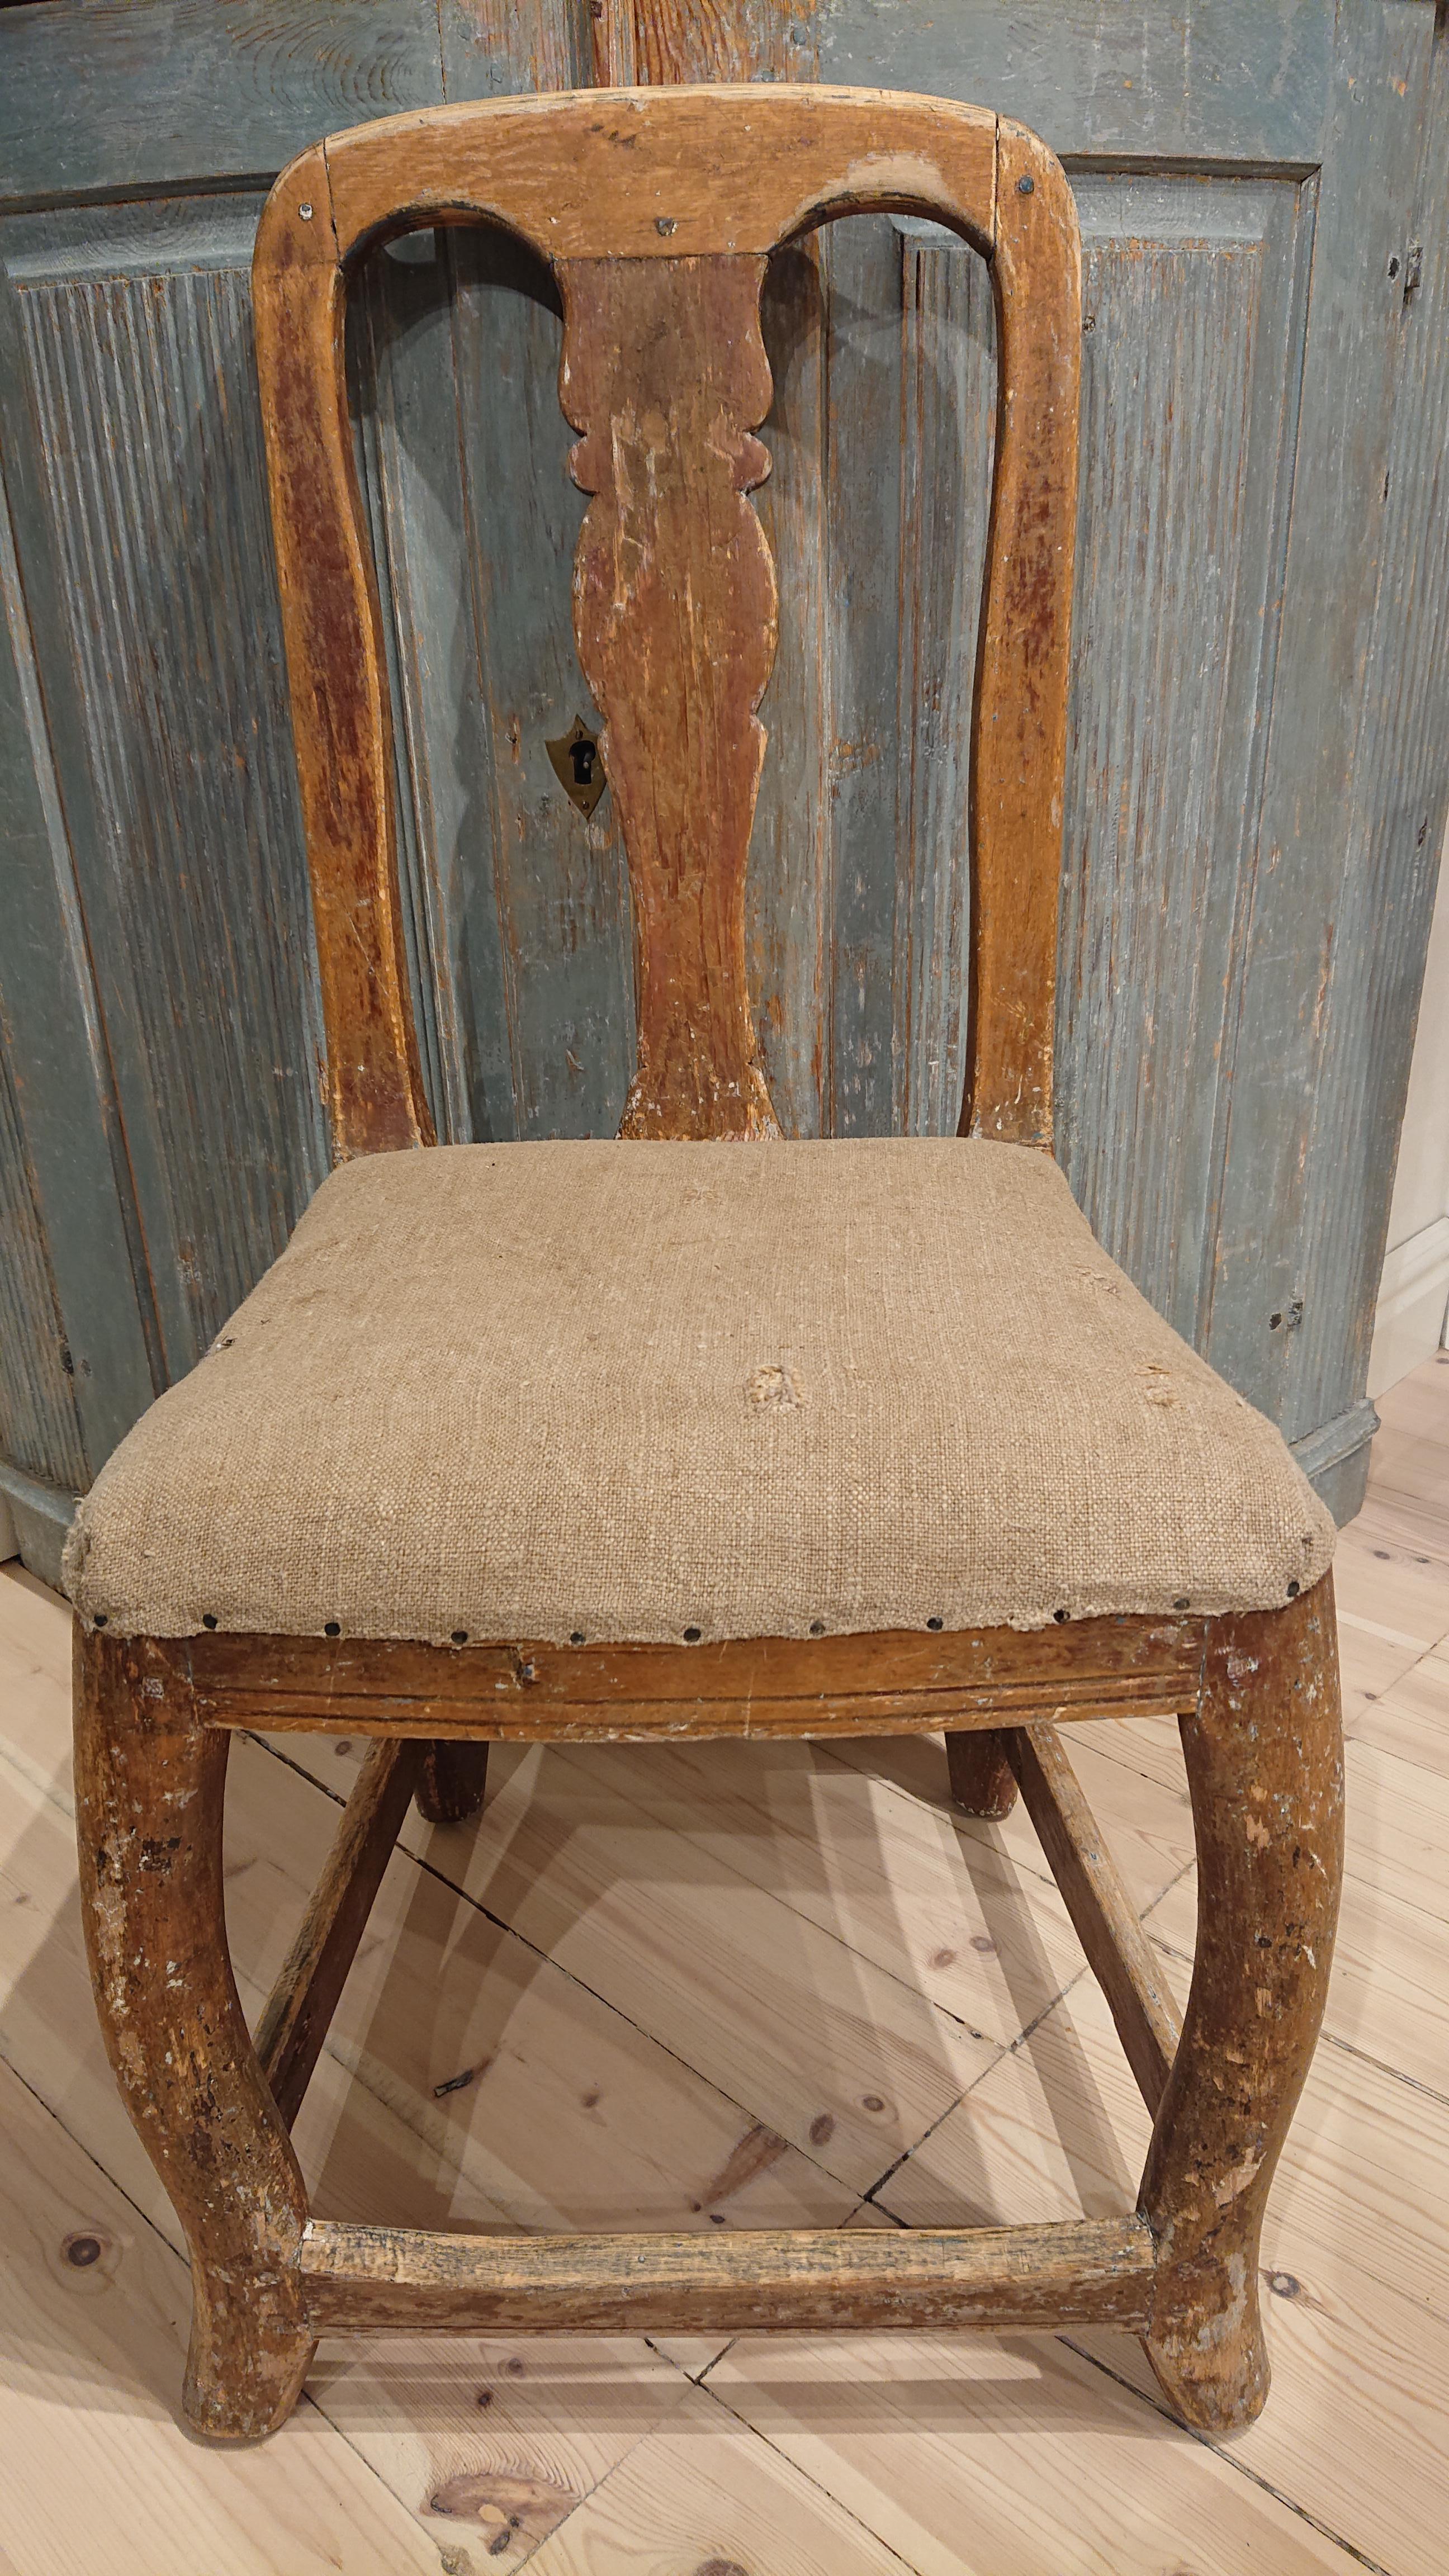 chaise d'enfant rococo suédoise du 18ème siècle de Sundsvall Medelpad, Nord de la Suède
Une très charmante et authentique chaise Rococo.
Idéal pour les enfants âgés de 6 à 12 ans.
Grattée à la main pour retrouver sa peinture d'origine.
Bon état